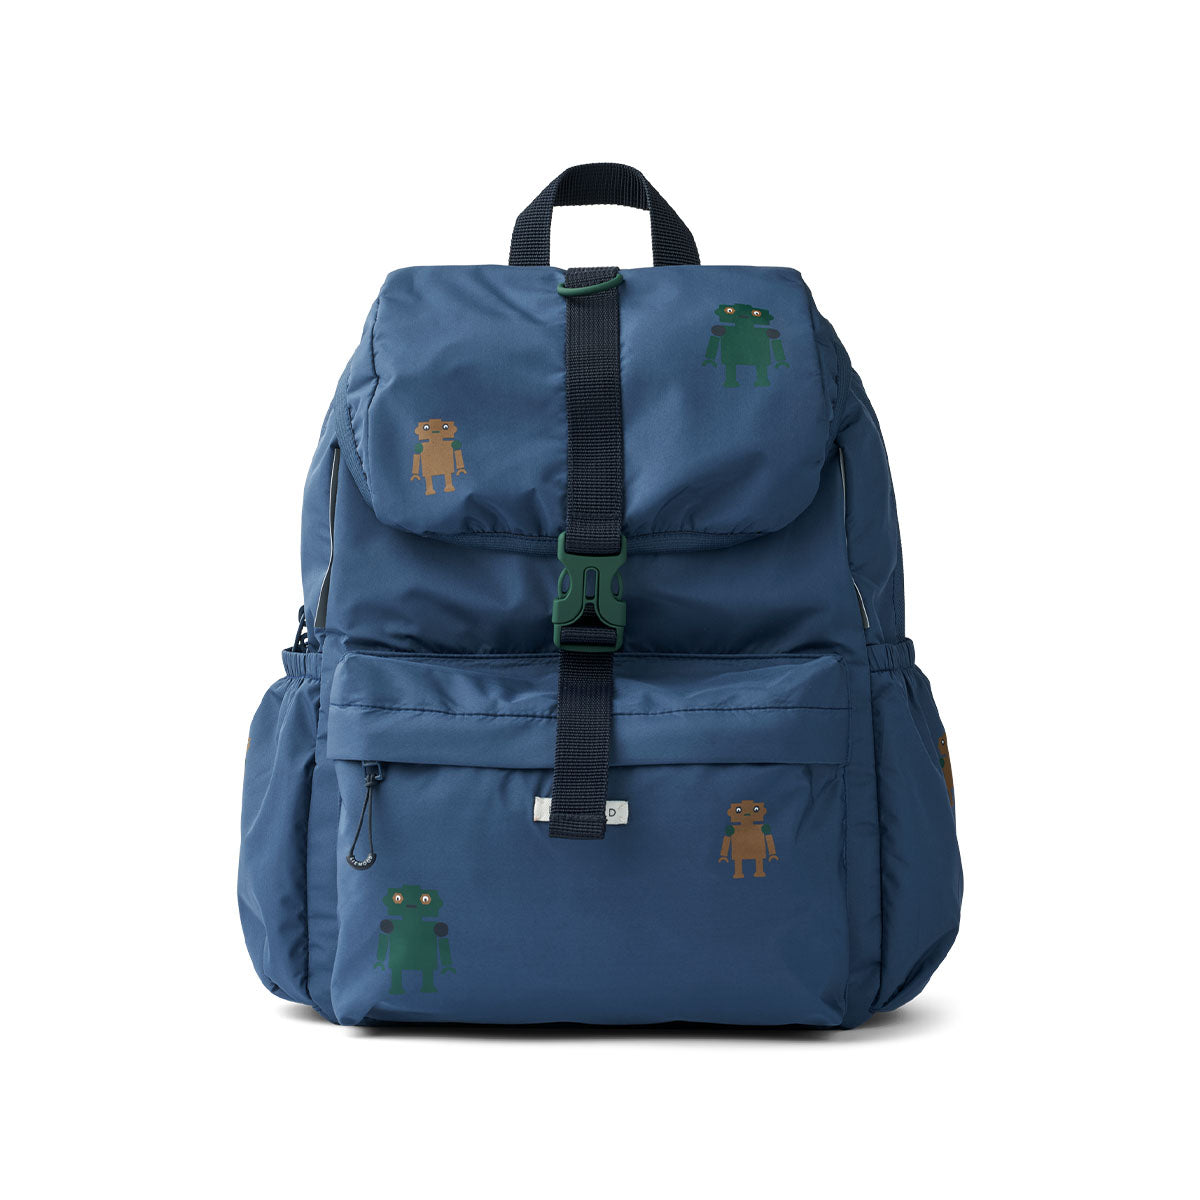 Deze christine school rugzak in robots/indigo blue van het merk Liewood is ideaal voor naar school! De ruime tas is groot genoeg voor alle essentials van je kindje en ziet er ook nog eens supertof uit! VanZus